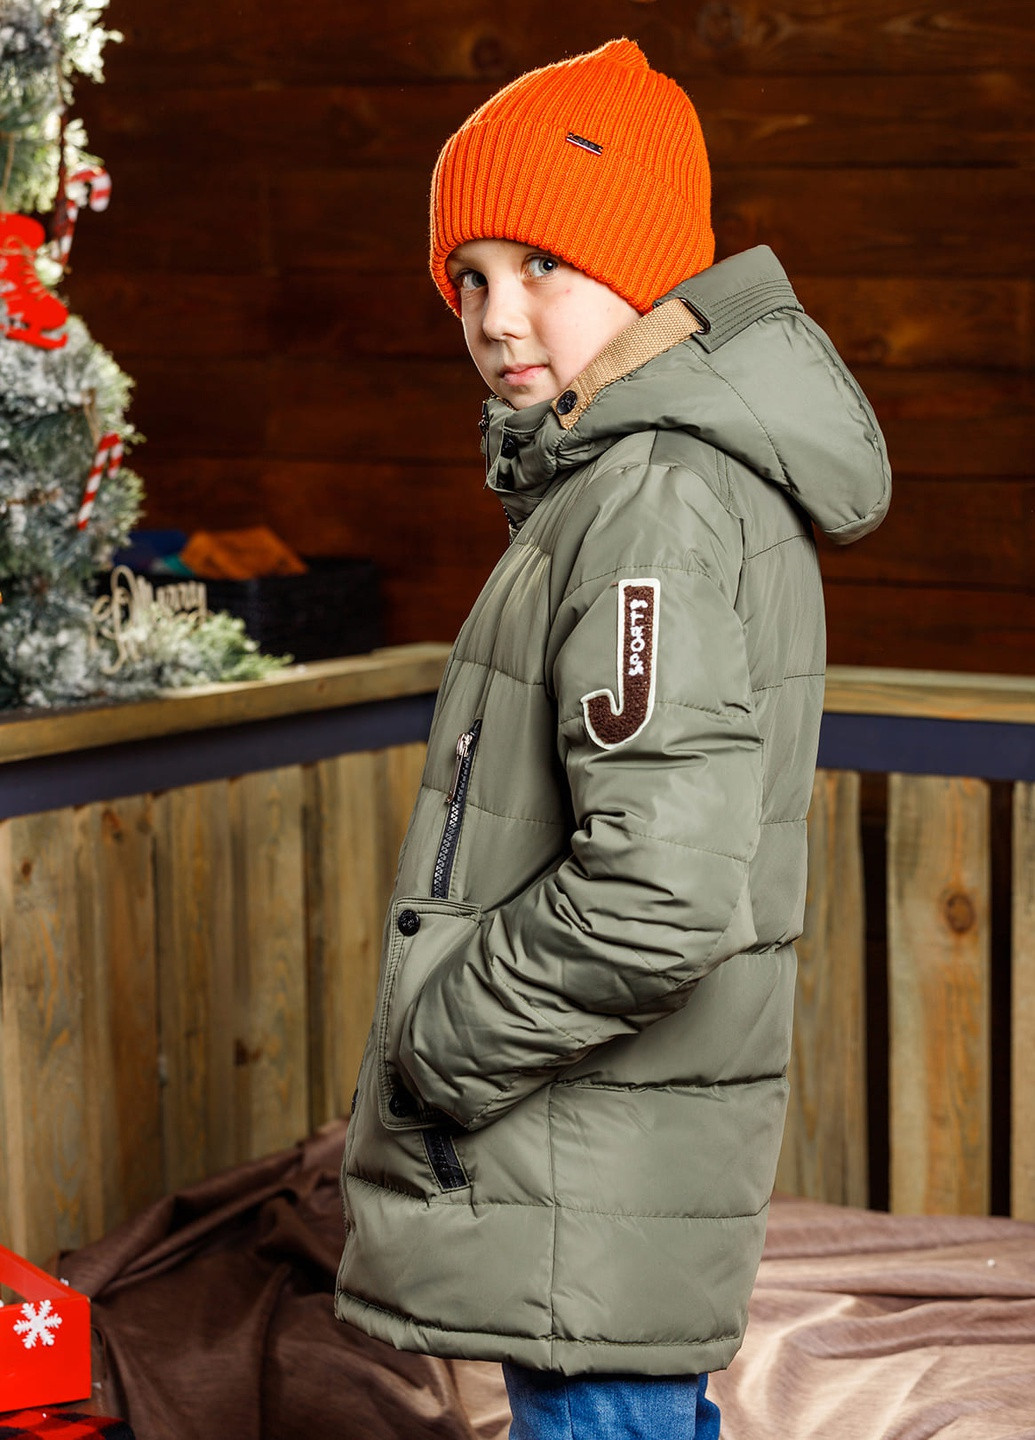 Зелена зимня пухова зимова куртка для хлопчика DobraMAMA